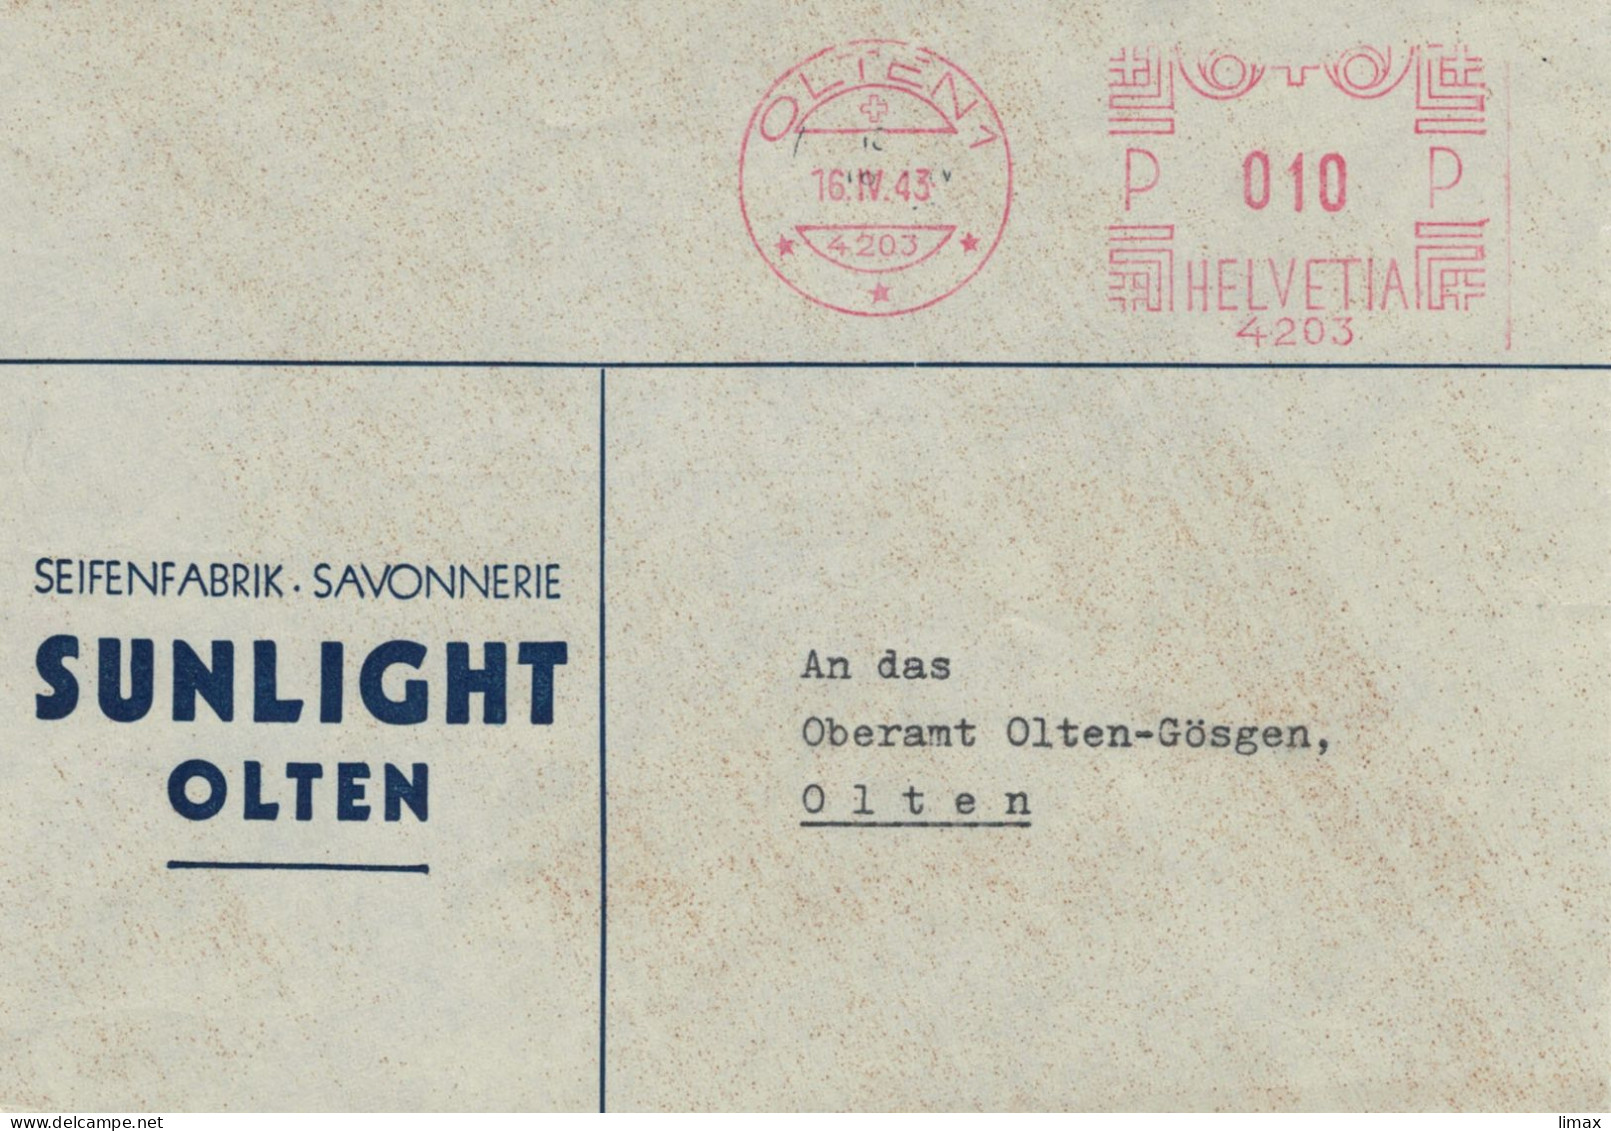 Seifenfabrik Savonnerie Sunlight Olten 1943 No. 4203 - Ortsbrief - Postage Meters